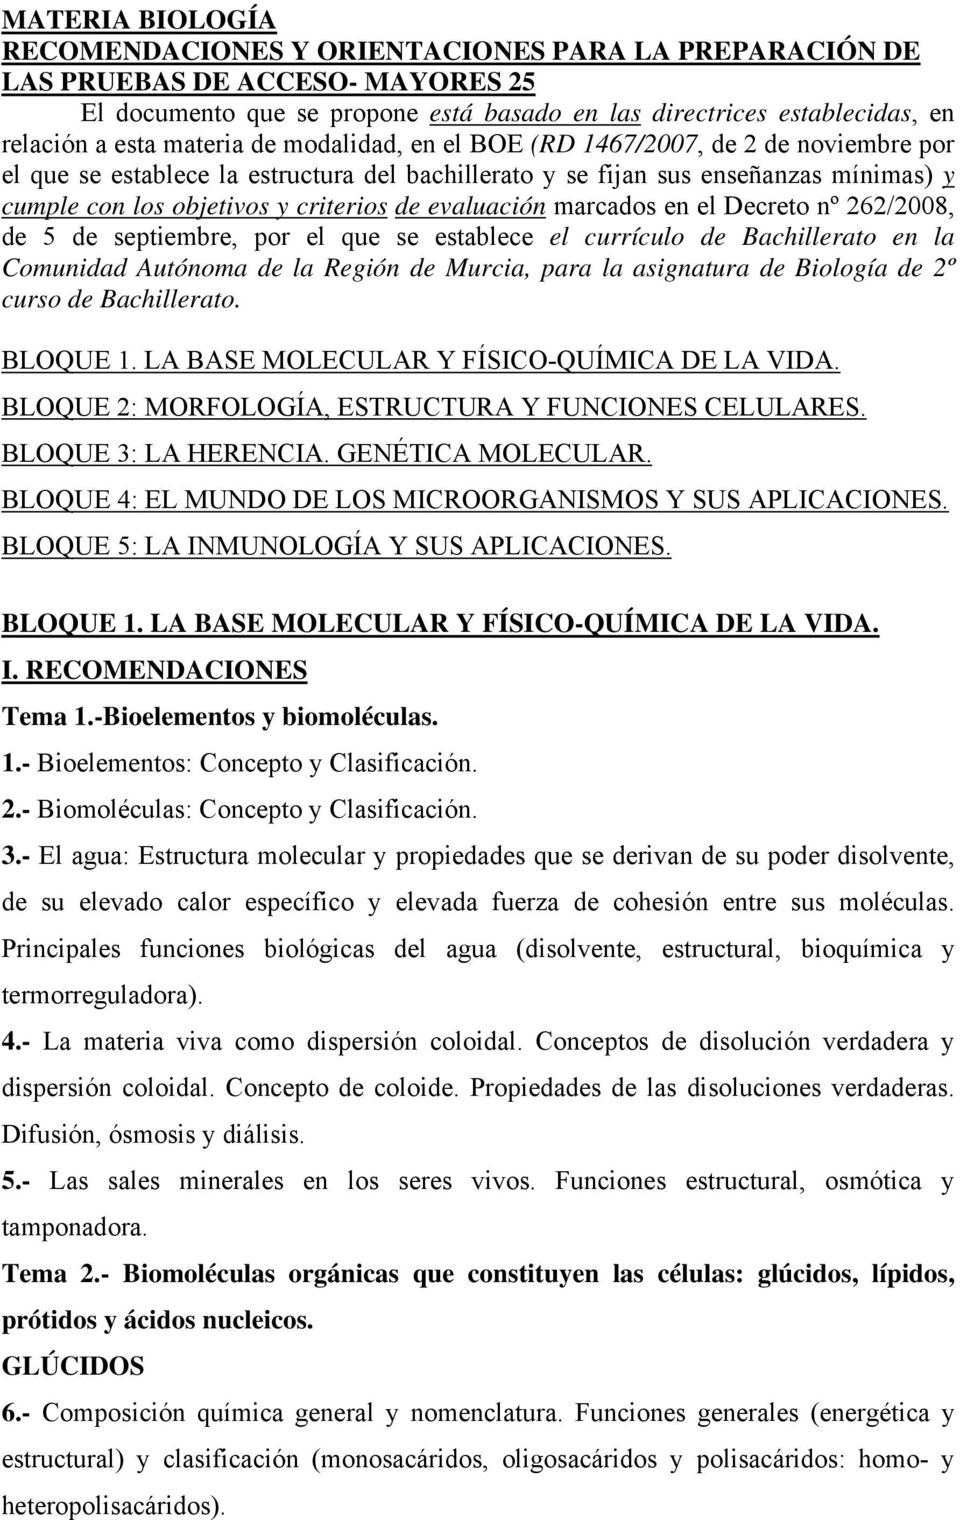 evaluación marcados en el Decreto nº 262/2008, de 5 de septiembre, por el que se establece el currículo de Bachillerato en la Comunidad Autónoma de la Región de Murcia, para la asignatura de Biología